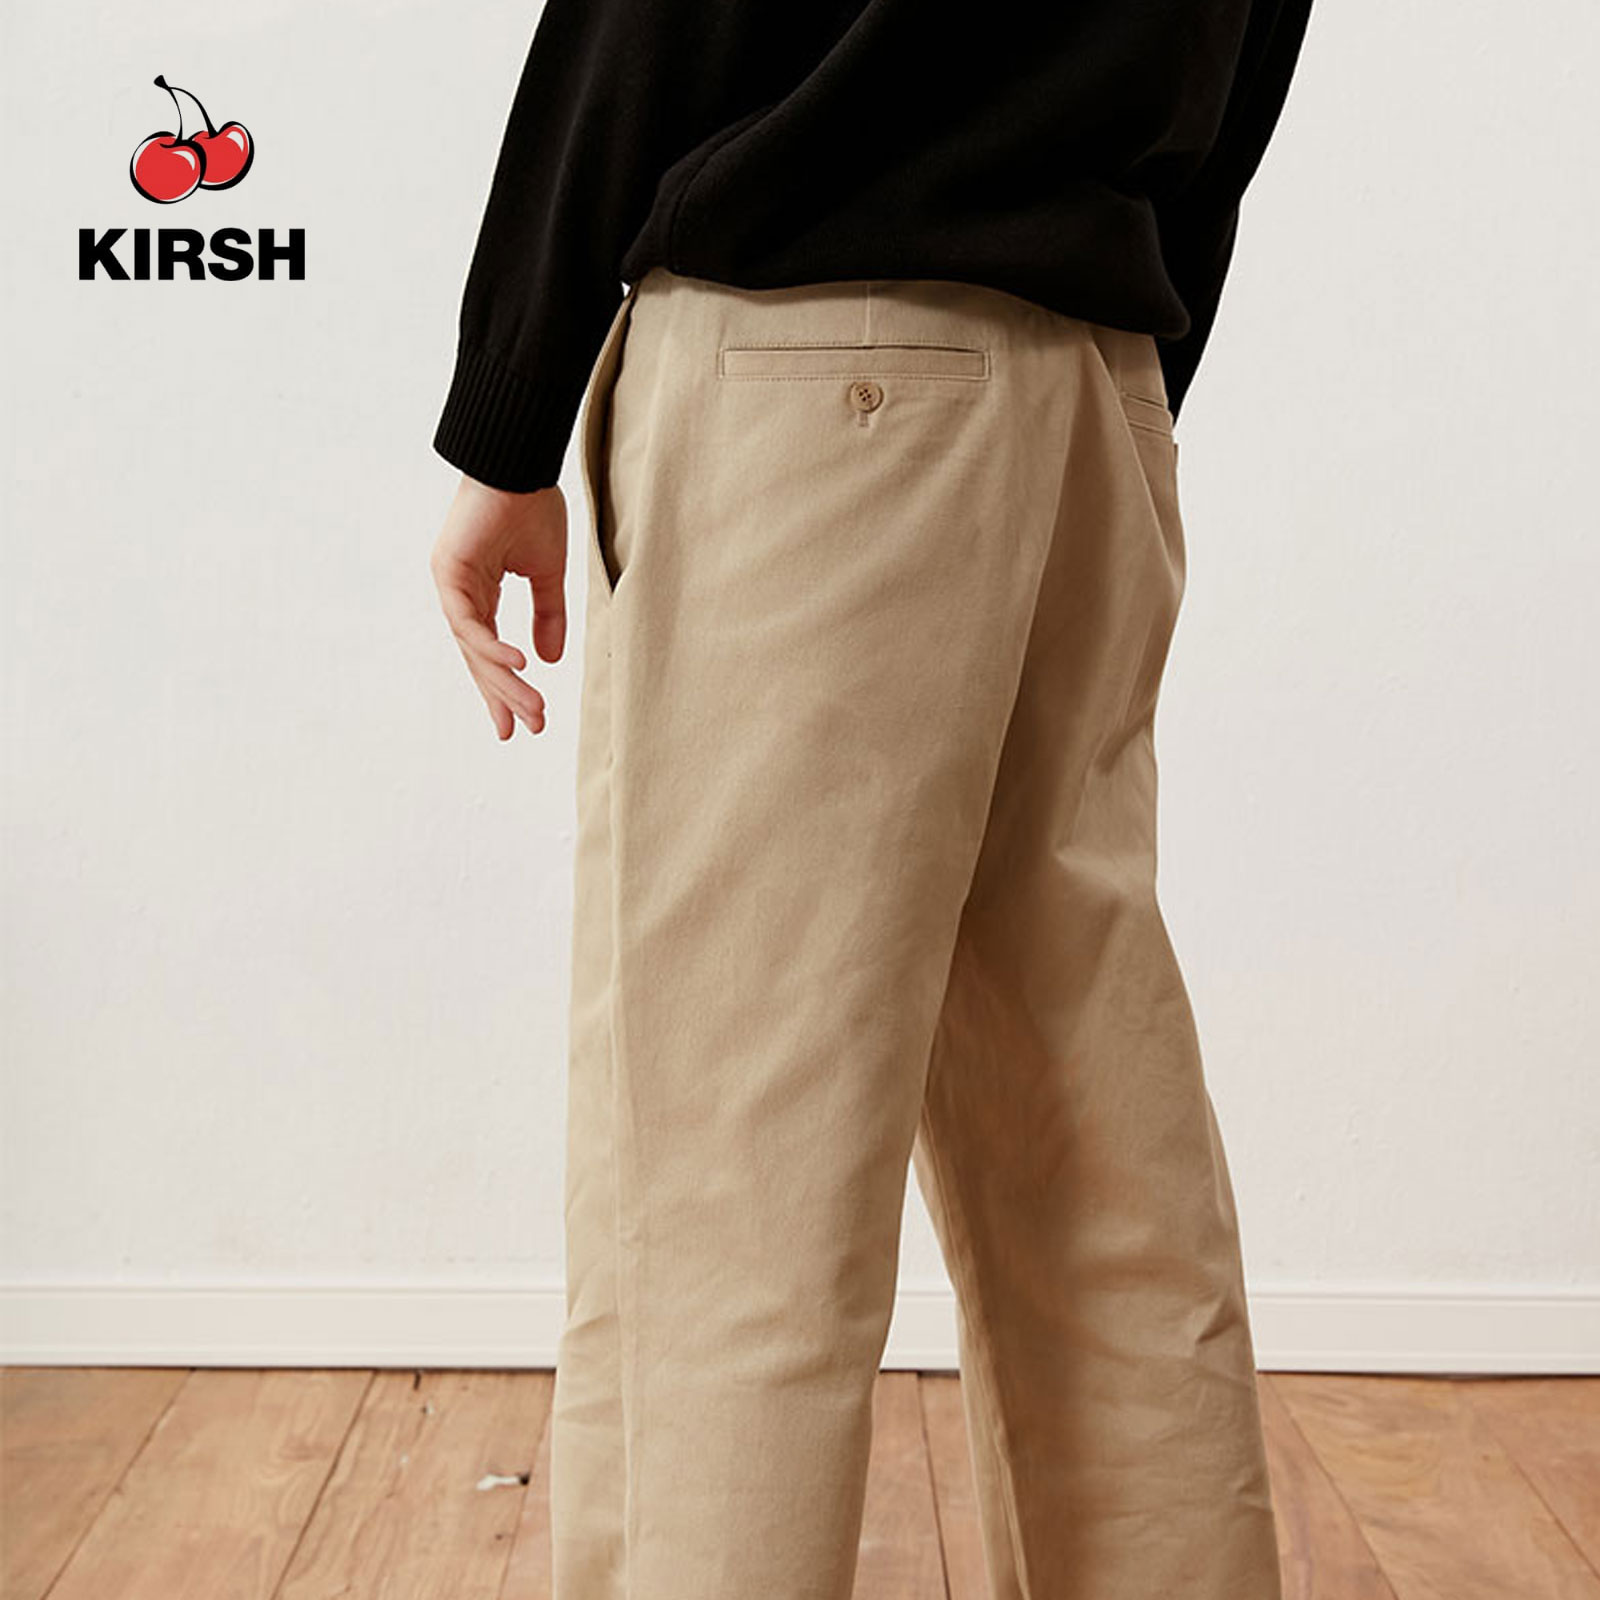 ช้อป กางเกงขายาว kirsh ออนไลน์ | lazada.co.th